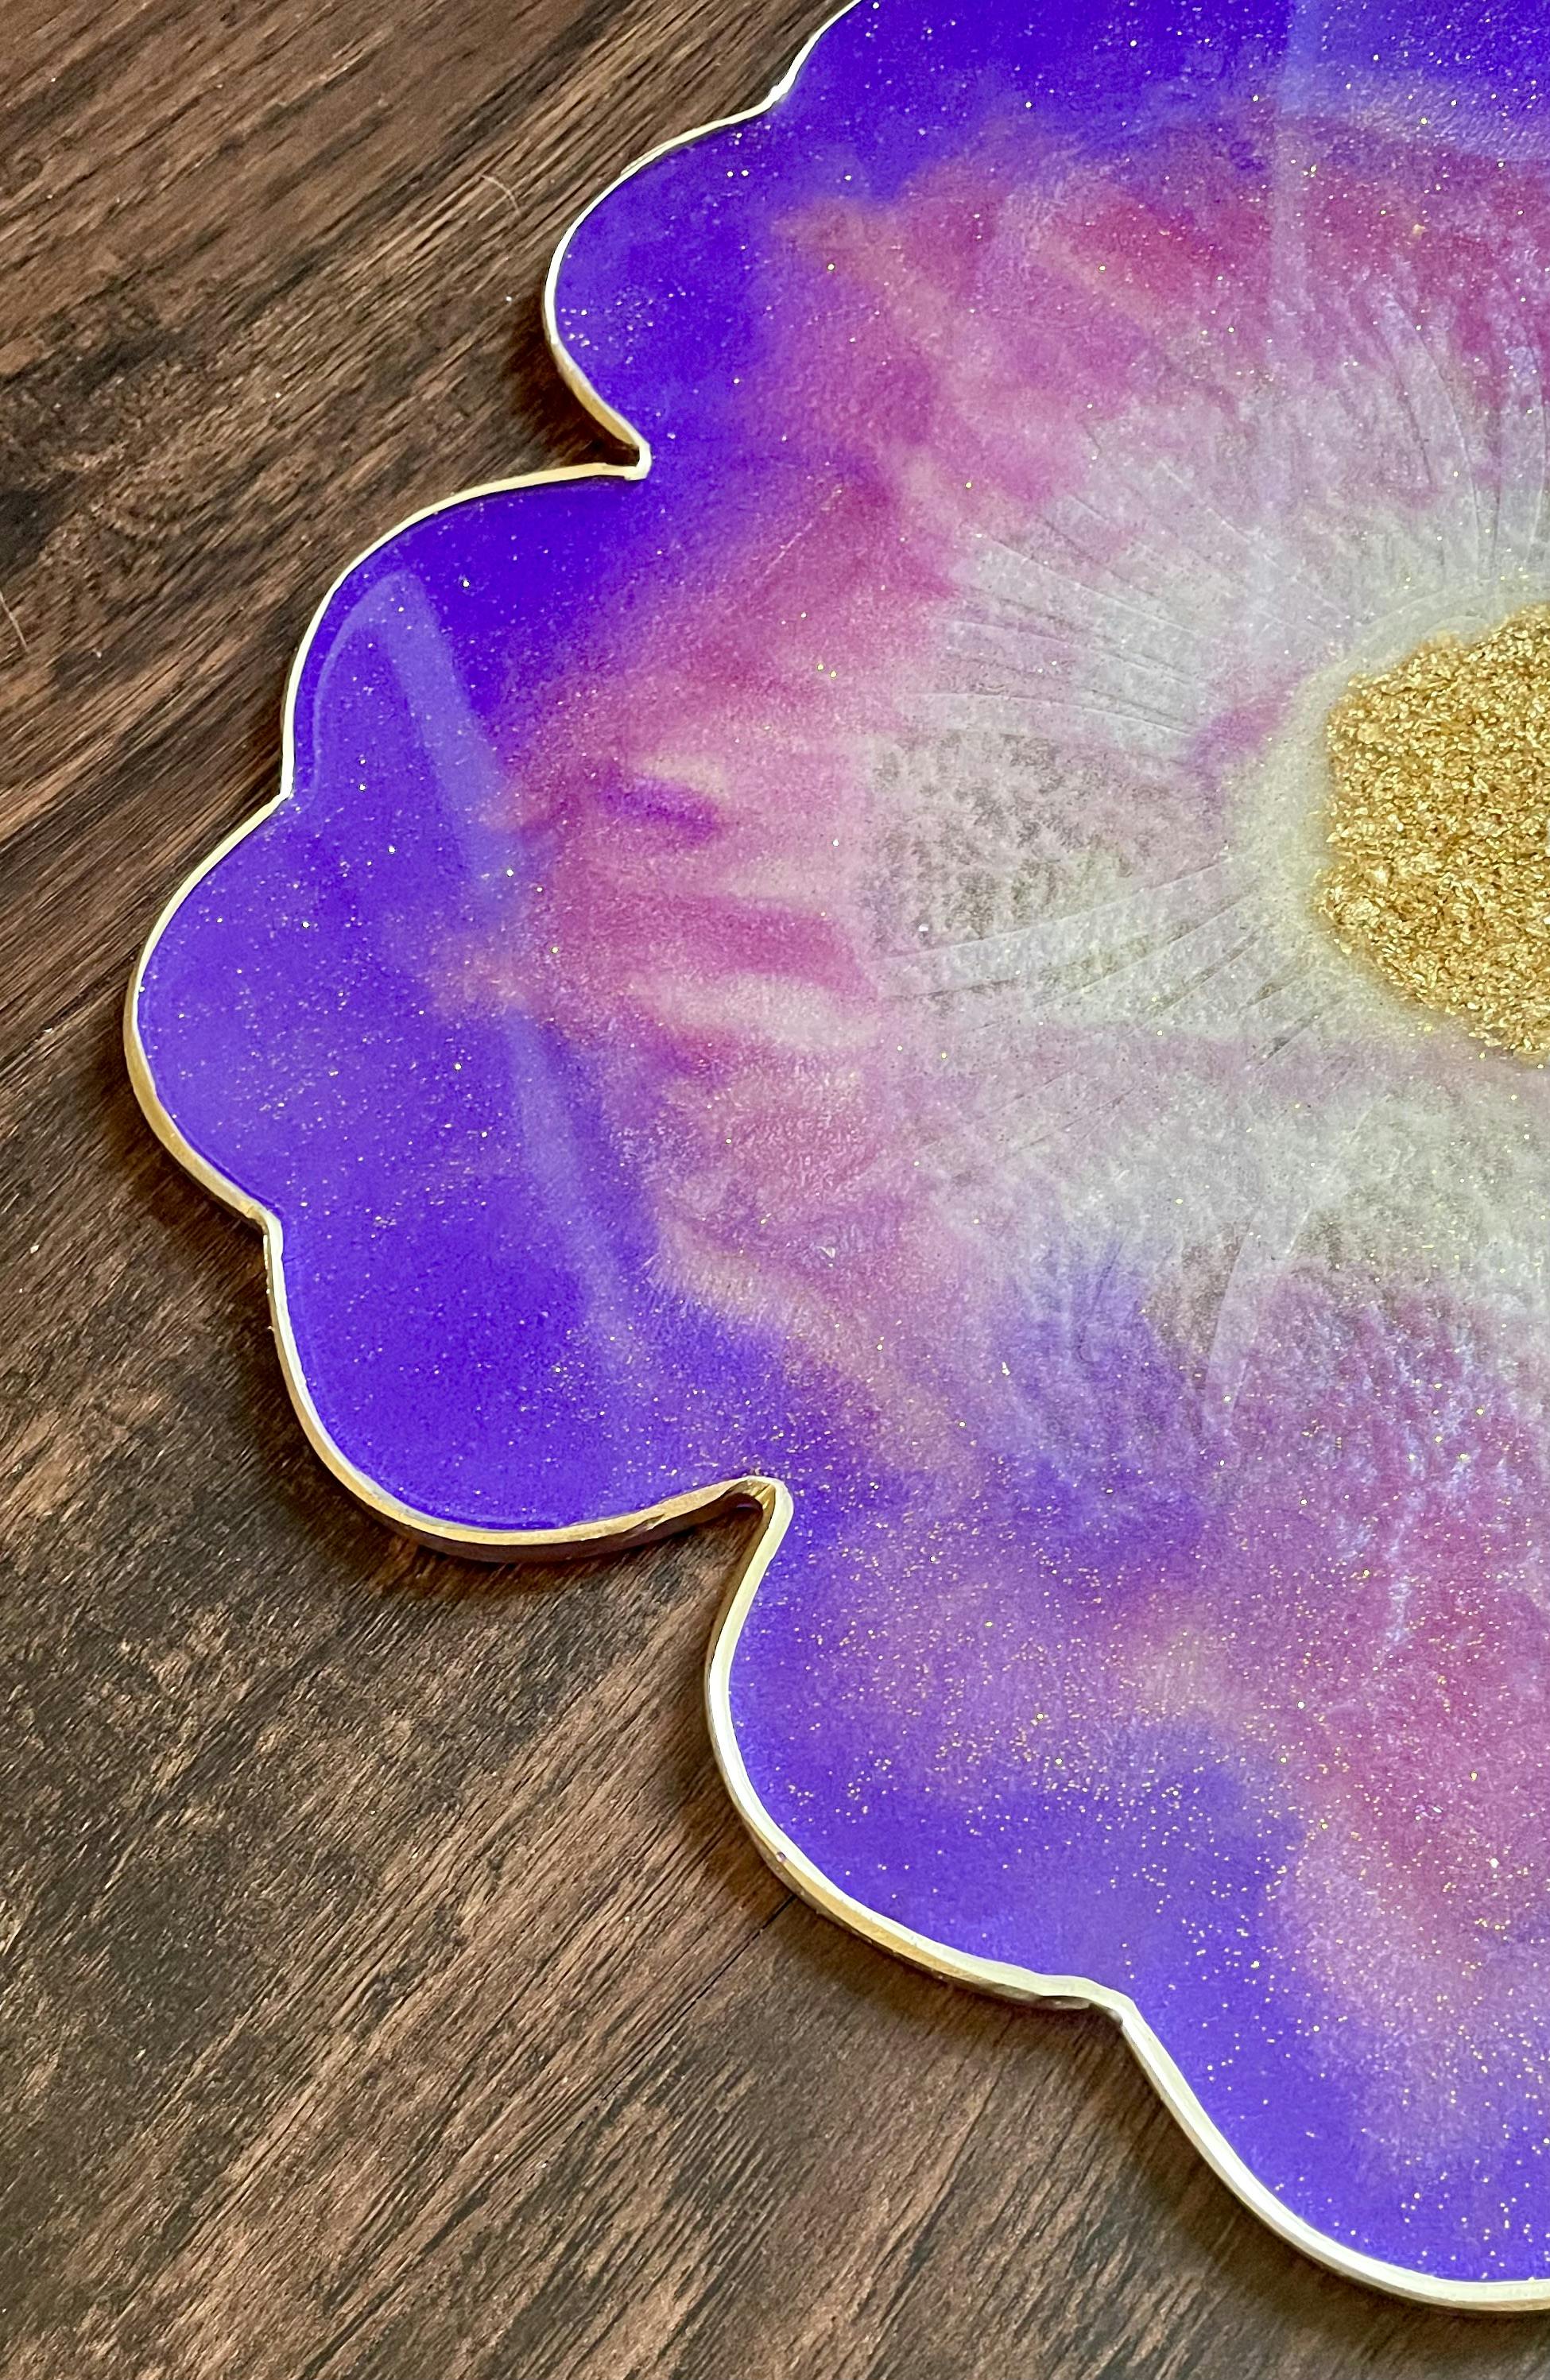 Sparkly Glam Decorative Tray + 1 Free Coaster